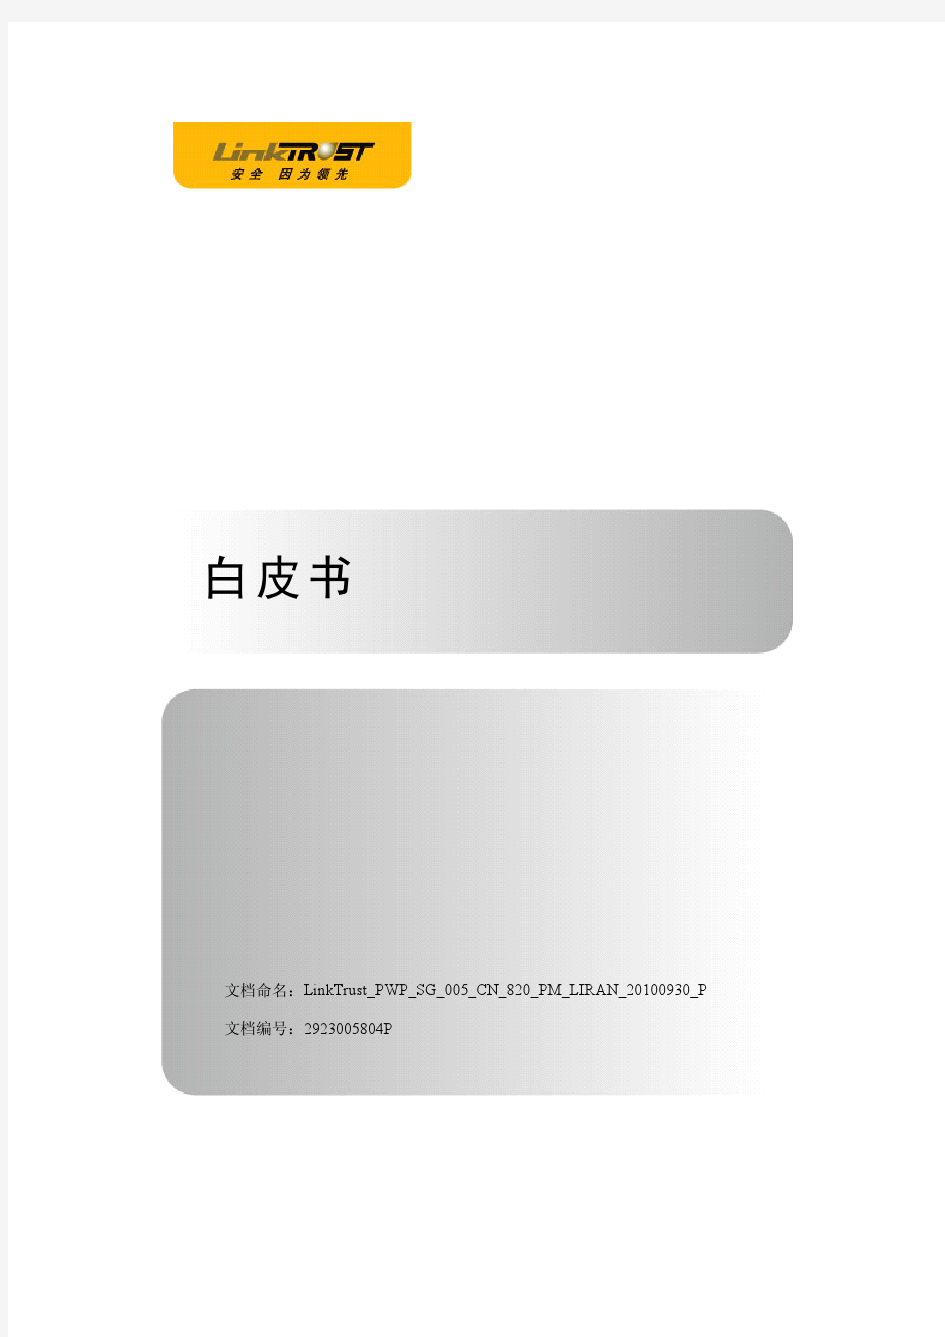 LinkTrust SG 白皮书-20100930